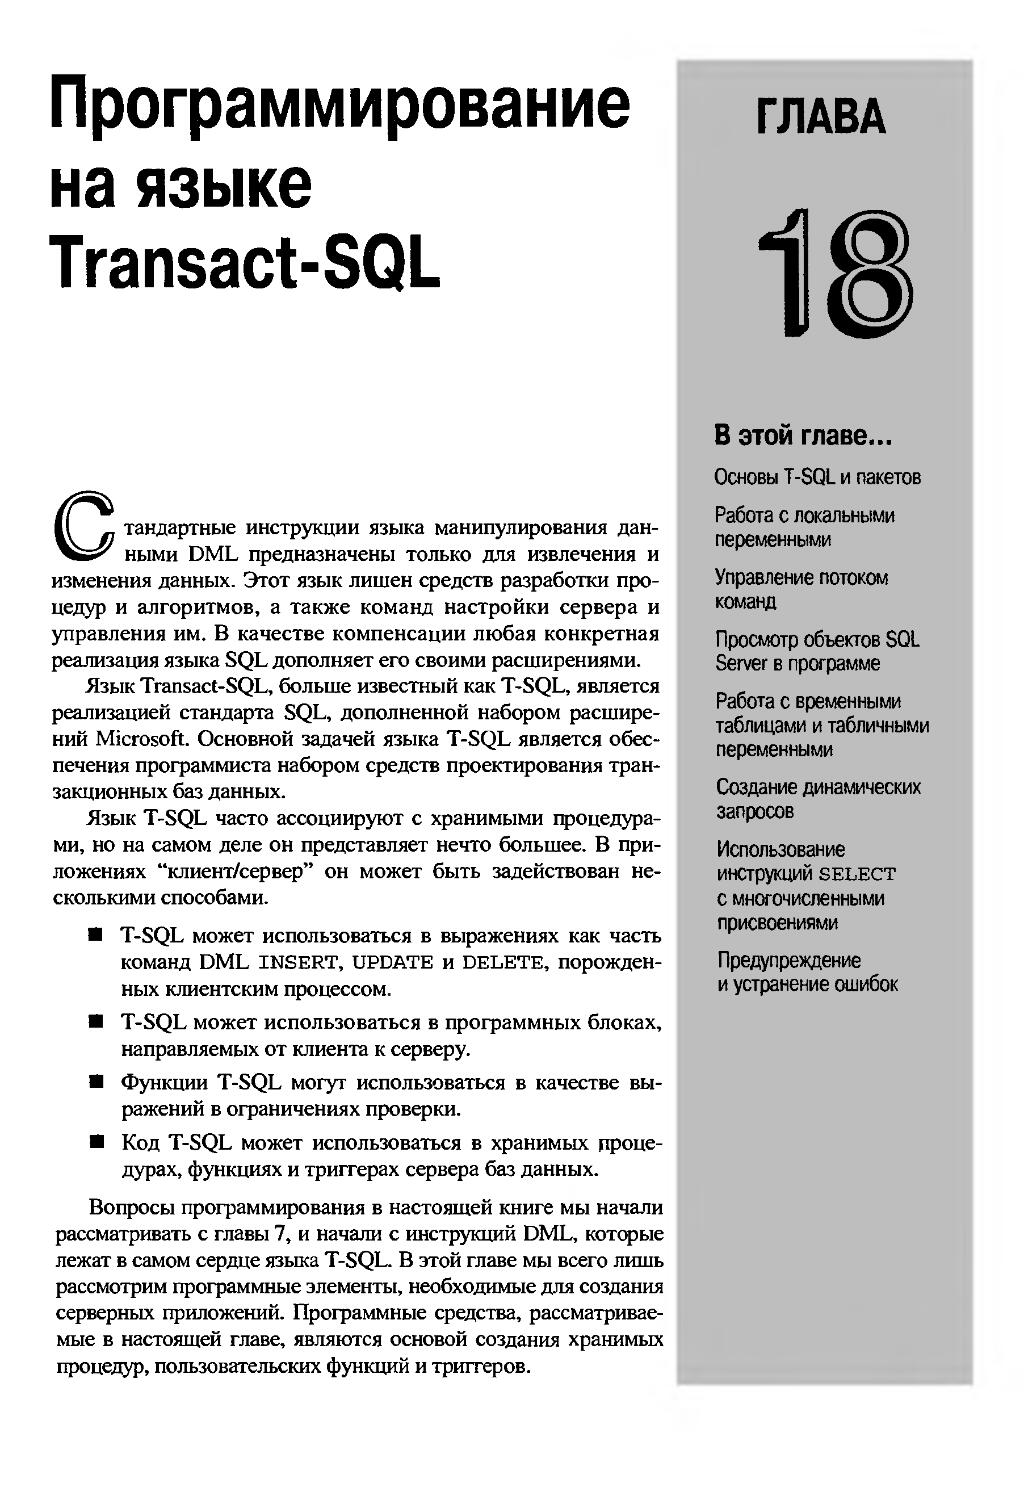 ГЛАВА 18. Программирование на языке Transact- SQL